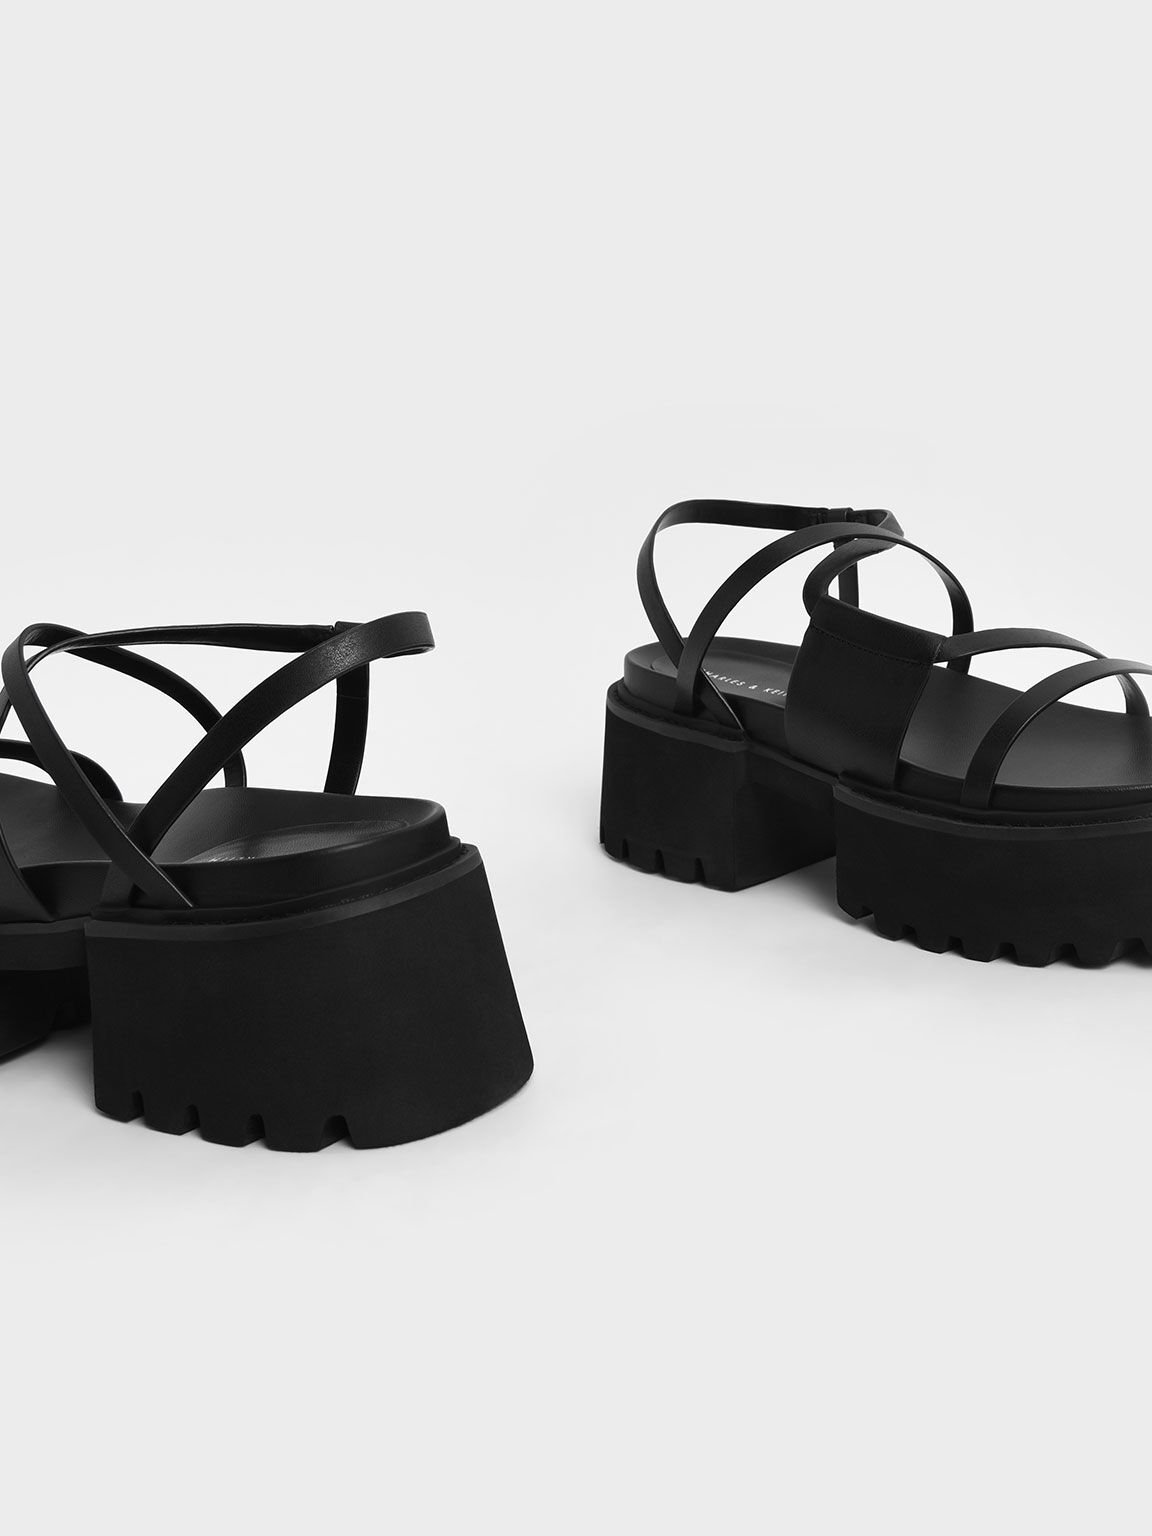 platform black strap sandals